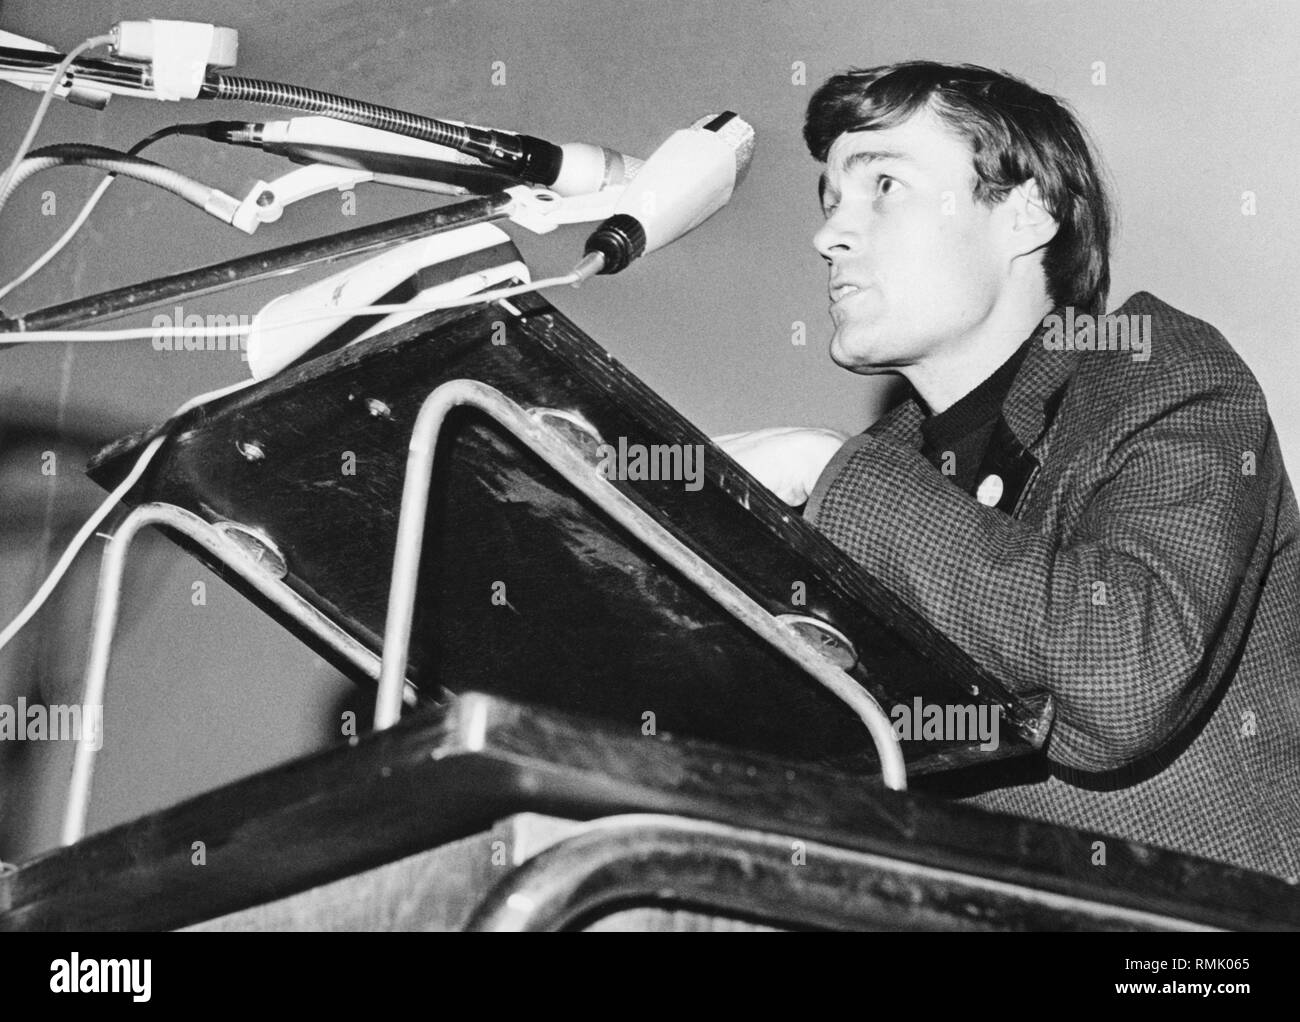 The spokesman of the Sozialistische Deutsche Studentenbund (Socialist German Student Union) during a speech. Stock Photo